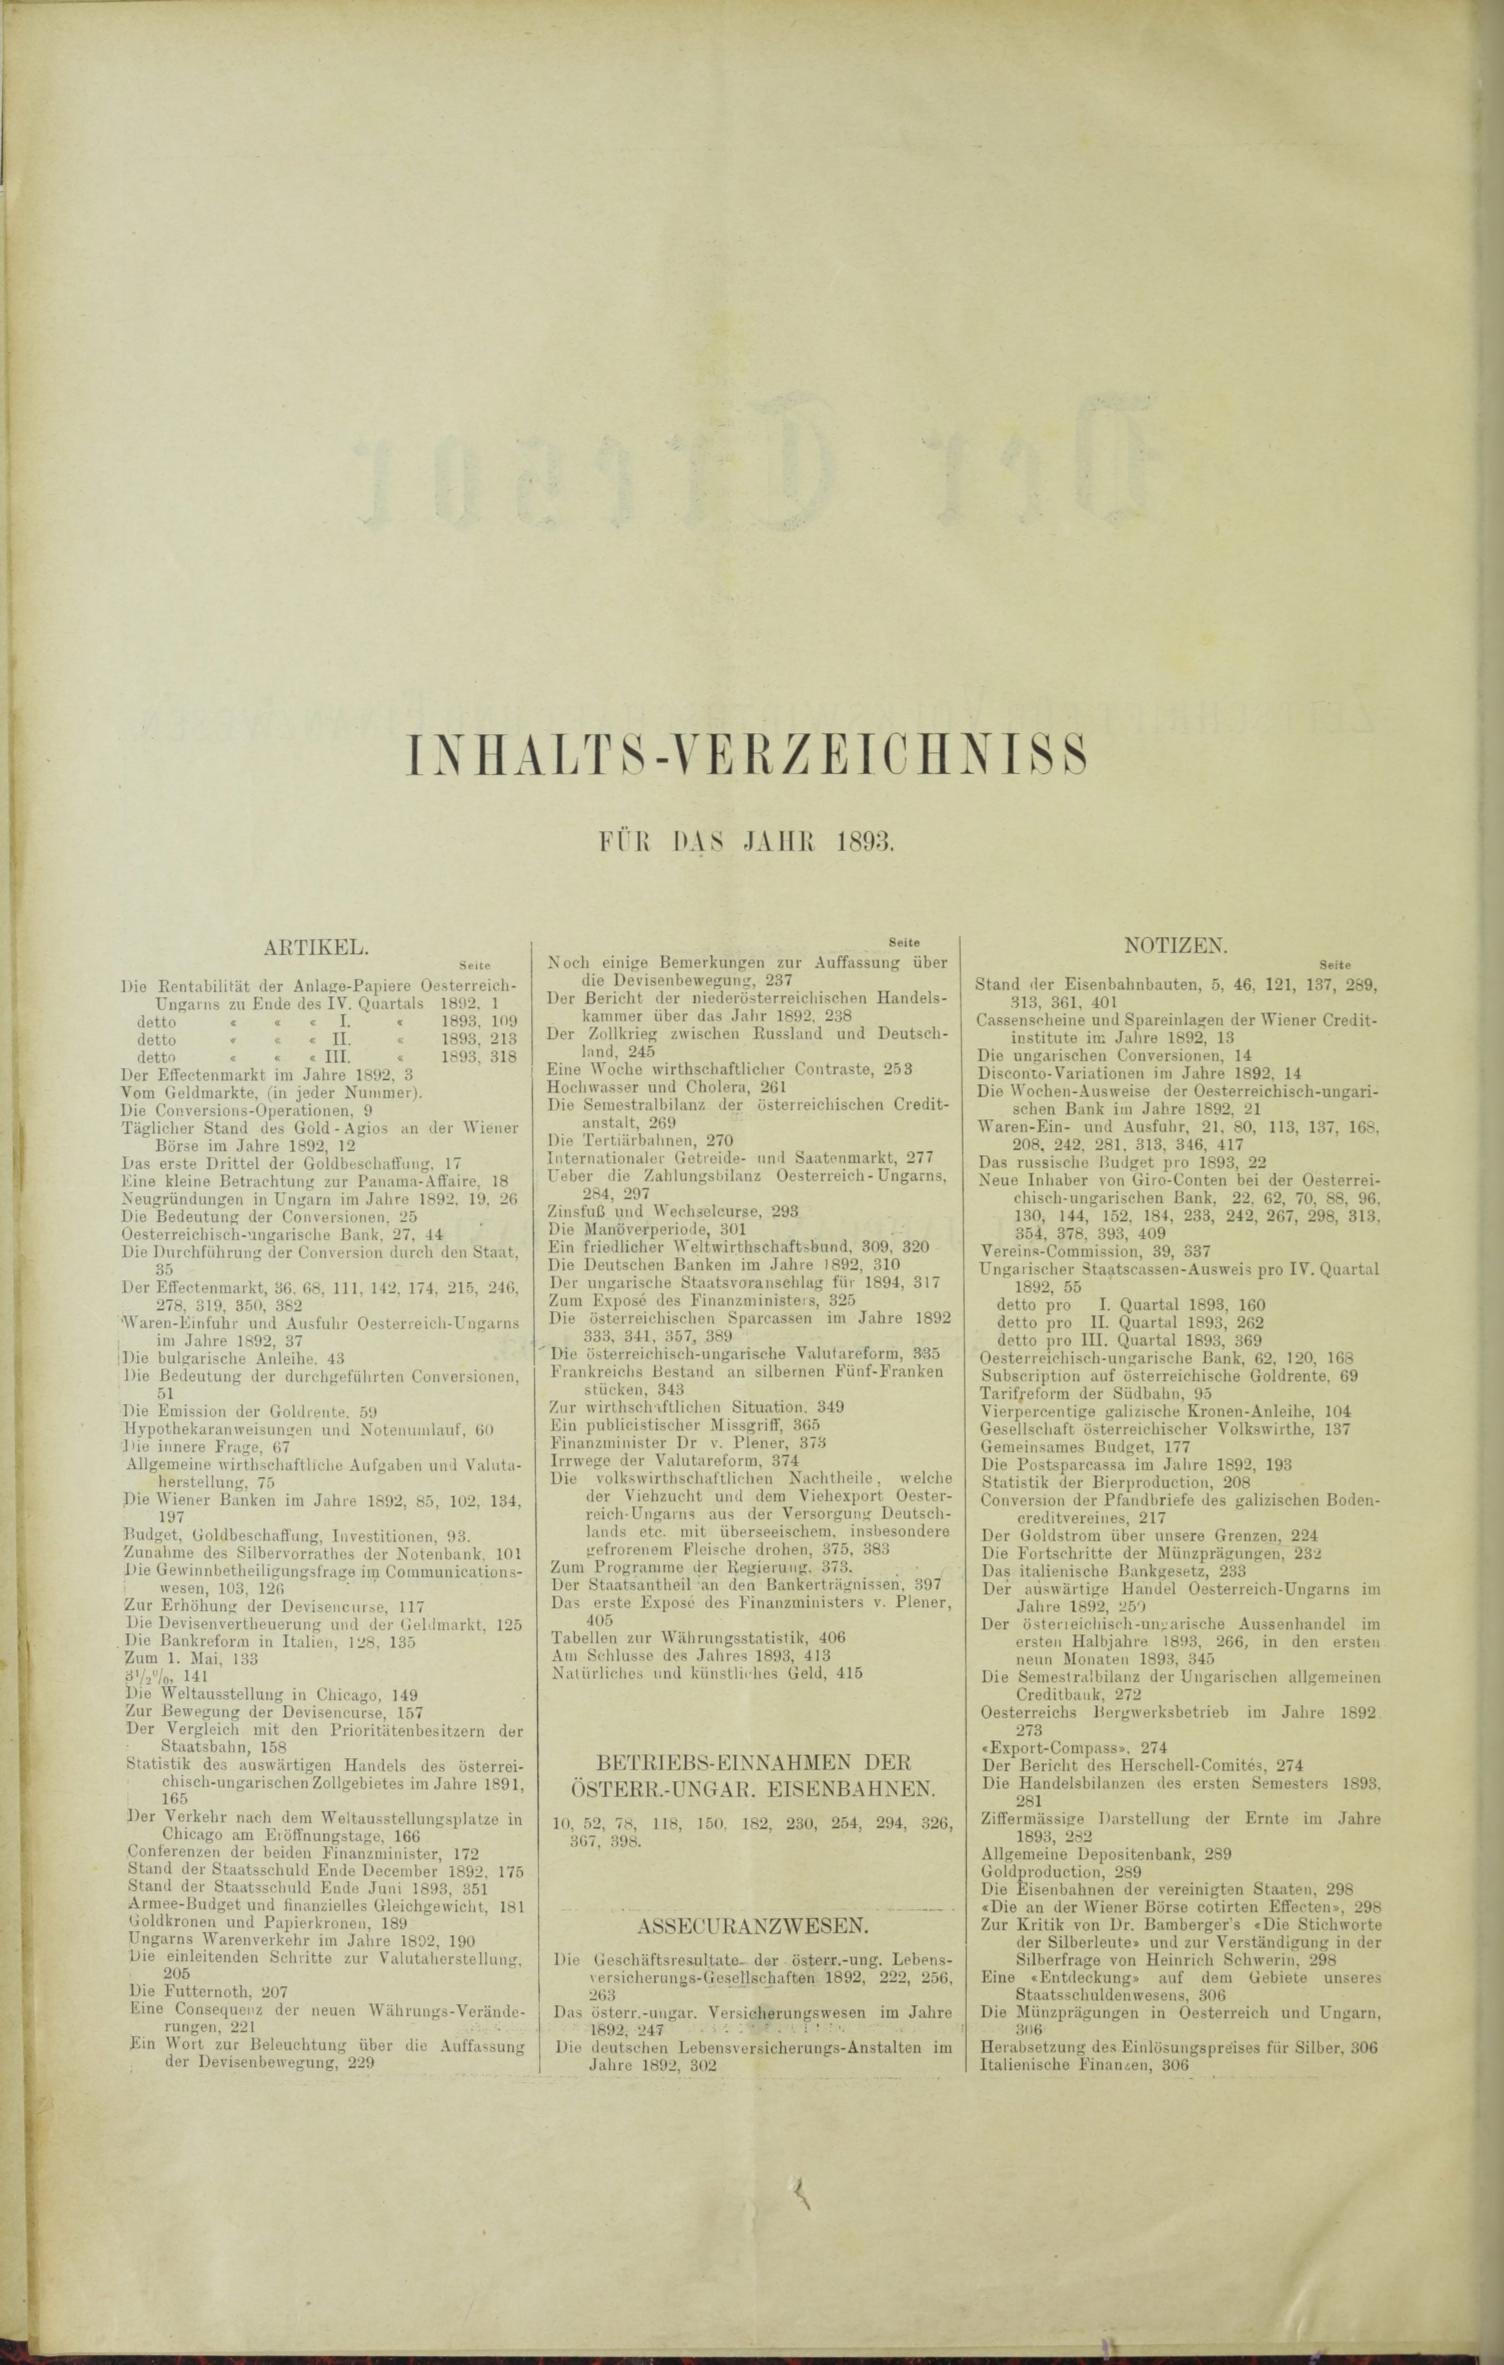 Der Tresor 23.03.1893 - Seite 10